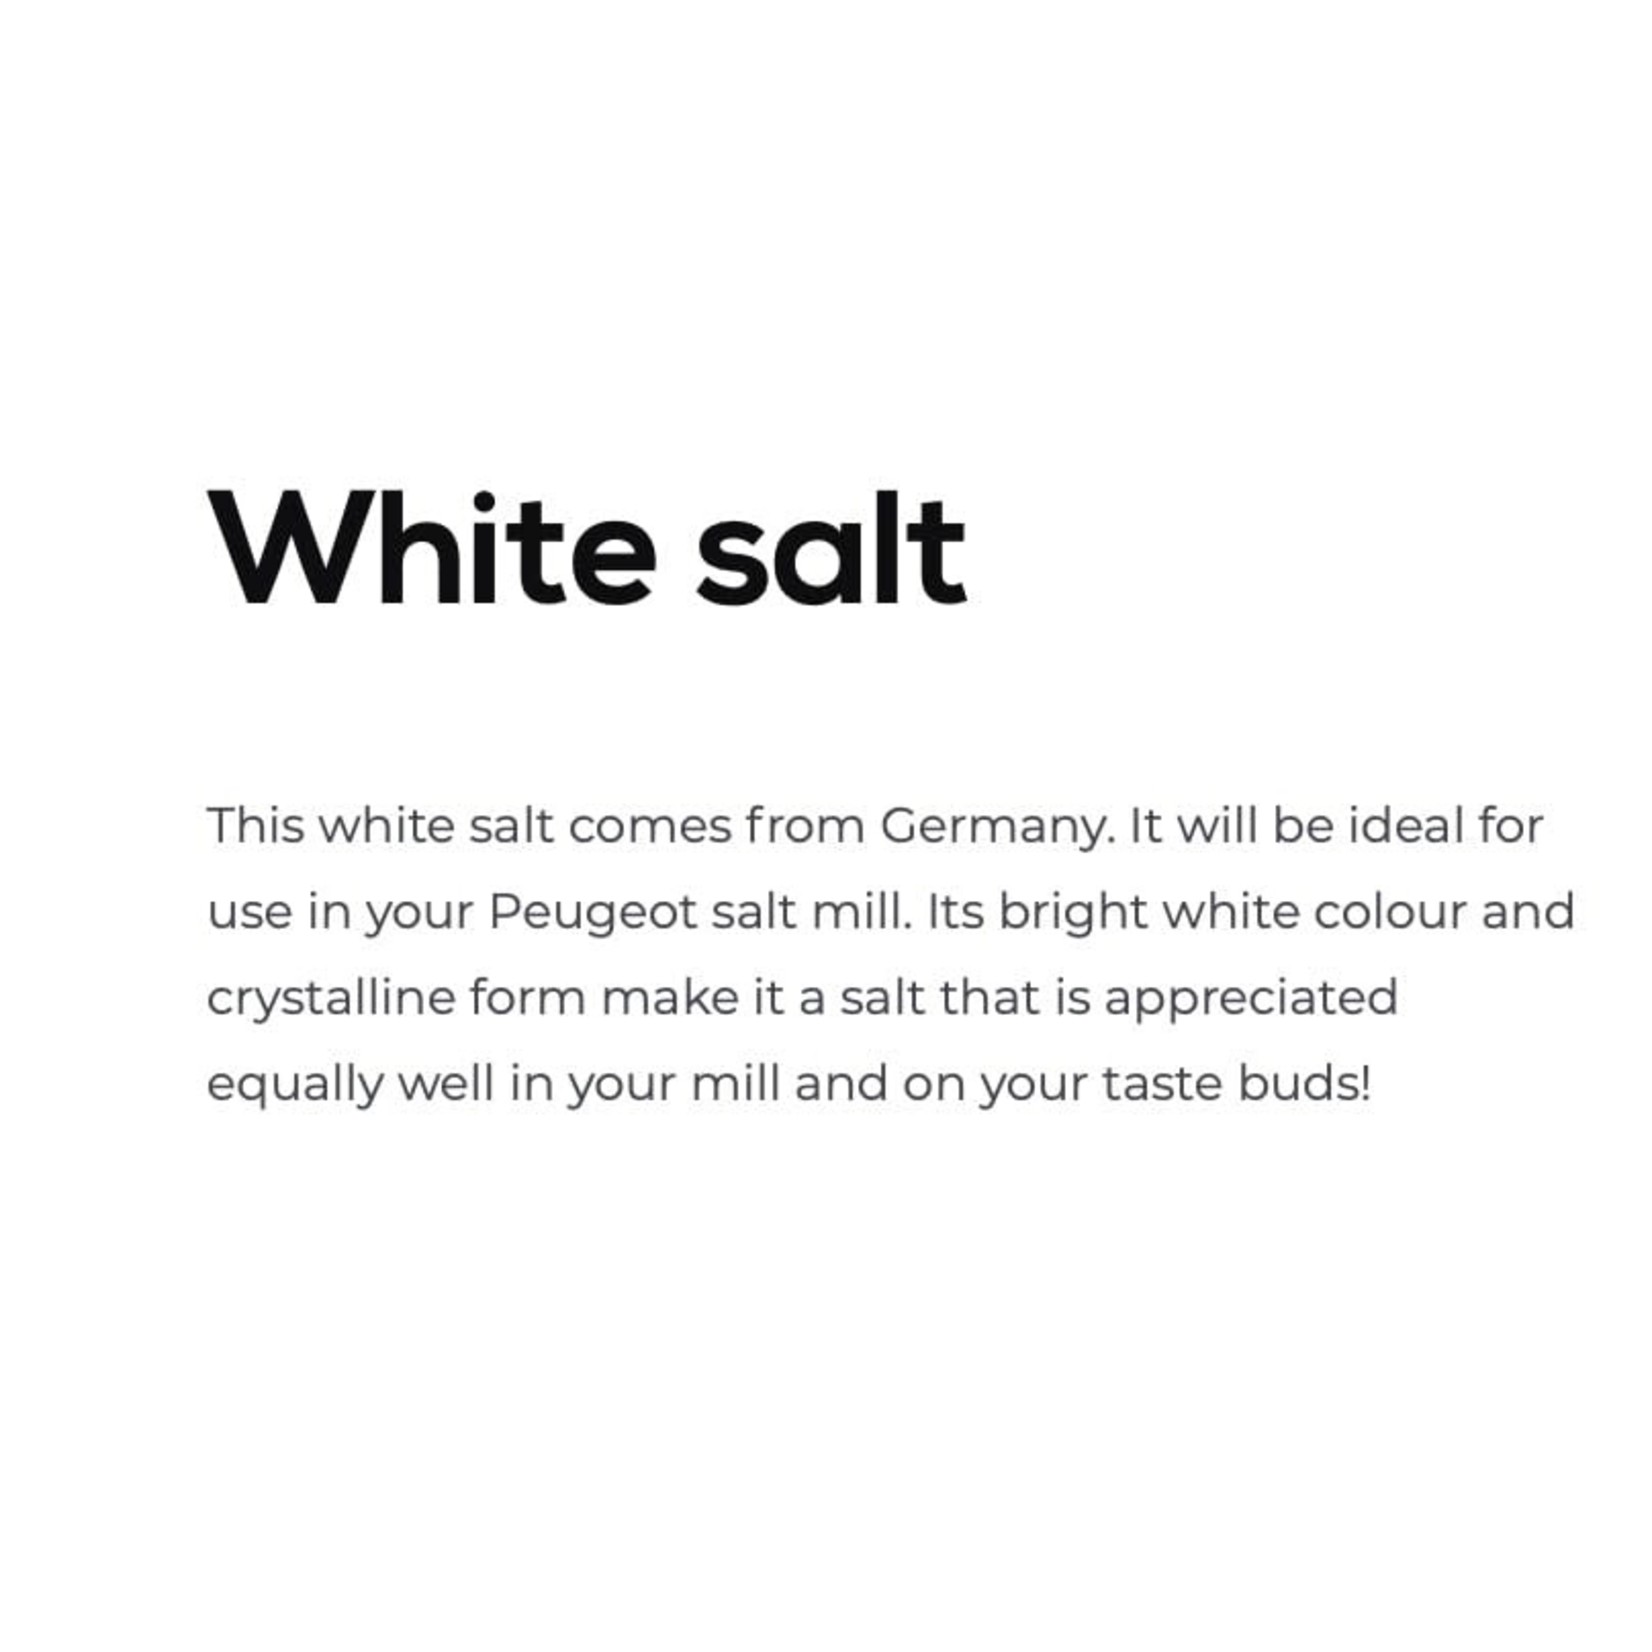 PEUGEOT PEUGEOT Germany White Salt Crystals 370g